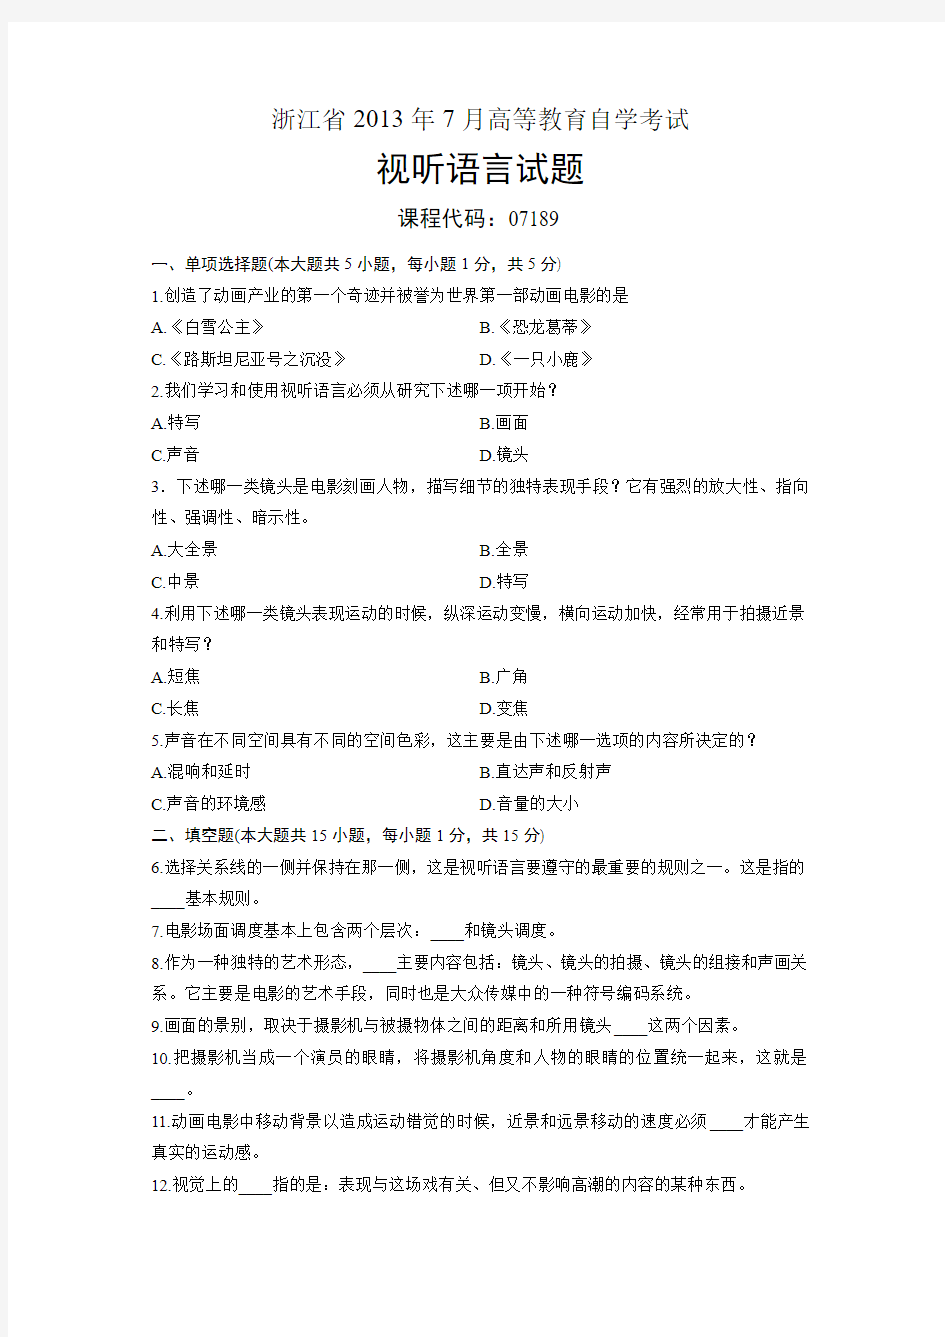 07189视听语言 浙江省2013年7月自考 试题